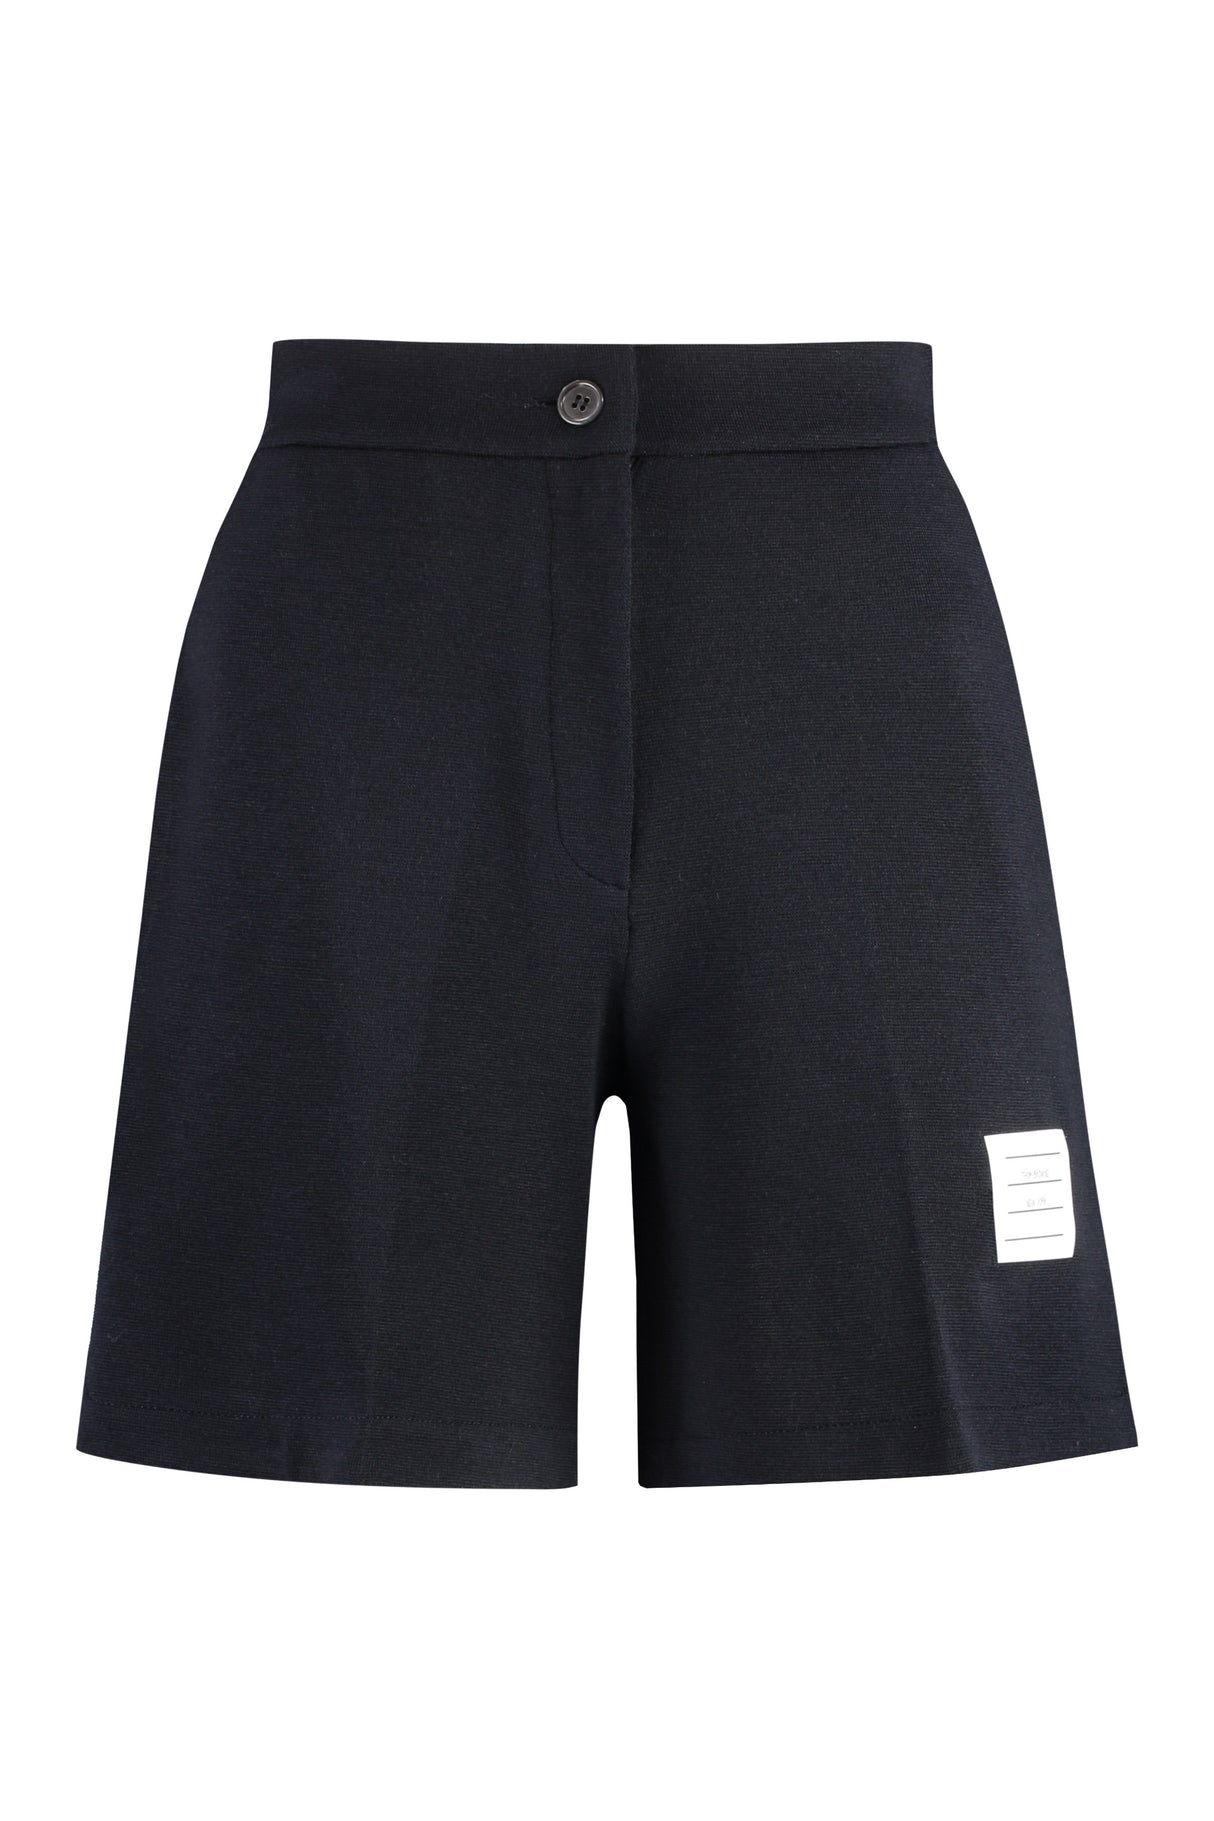 Quần shorts cao bầu dục dành cho phụ nữ màu xanh (SS24)